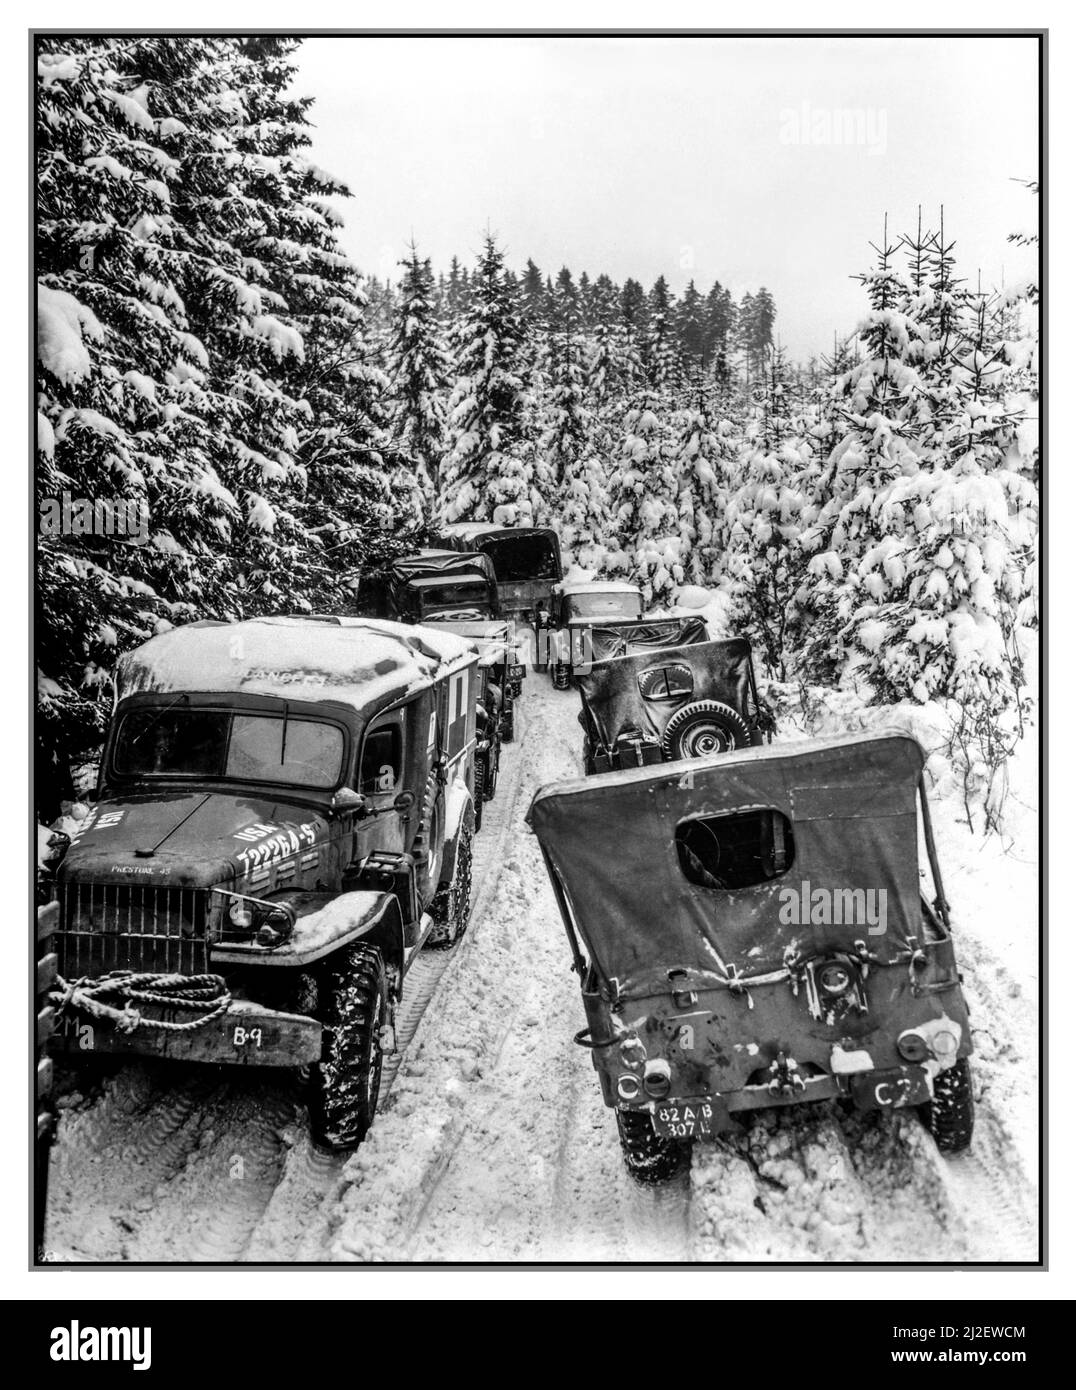 WW2 bataille de l'effllement des véhicules d'infanterie américaine bloqués dans des bancs de neige d'hiver profonds sur une route étroite stoppent le trafic militaire dans les bois de Wallaroder, Belgique. 87th Inf. Div. 30 janvier 1945. (Armée) Seconde Guerre mondiale Seconde Guerre mondiale Banque D'Images